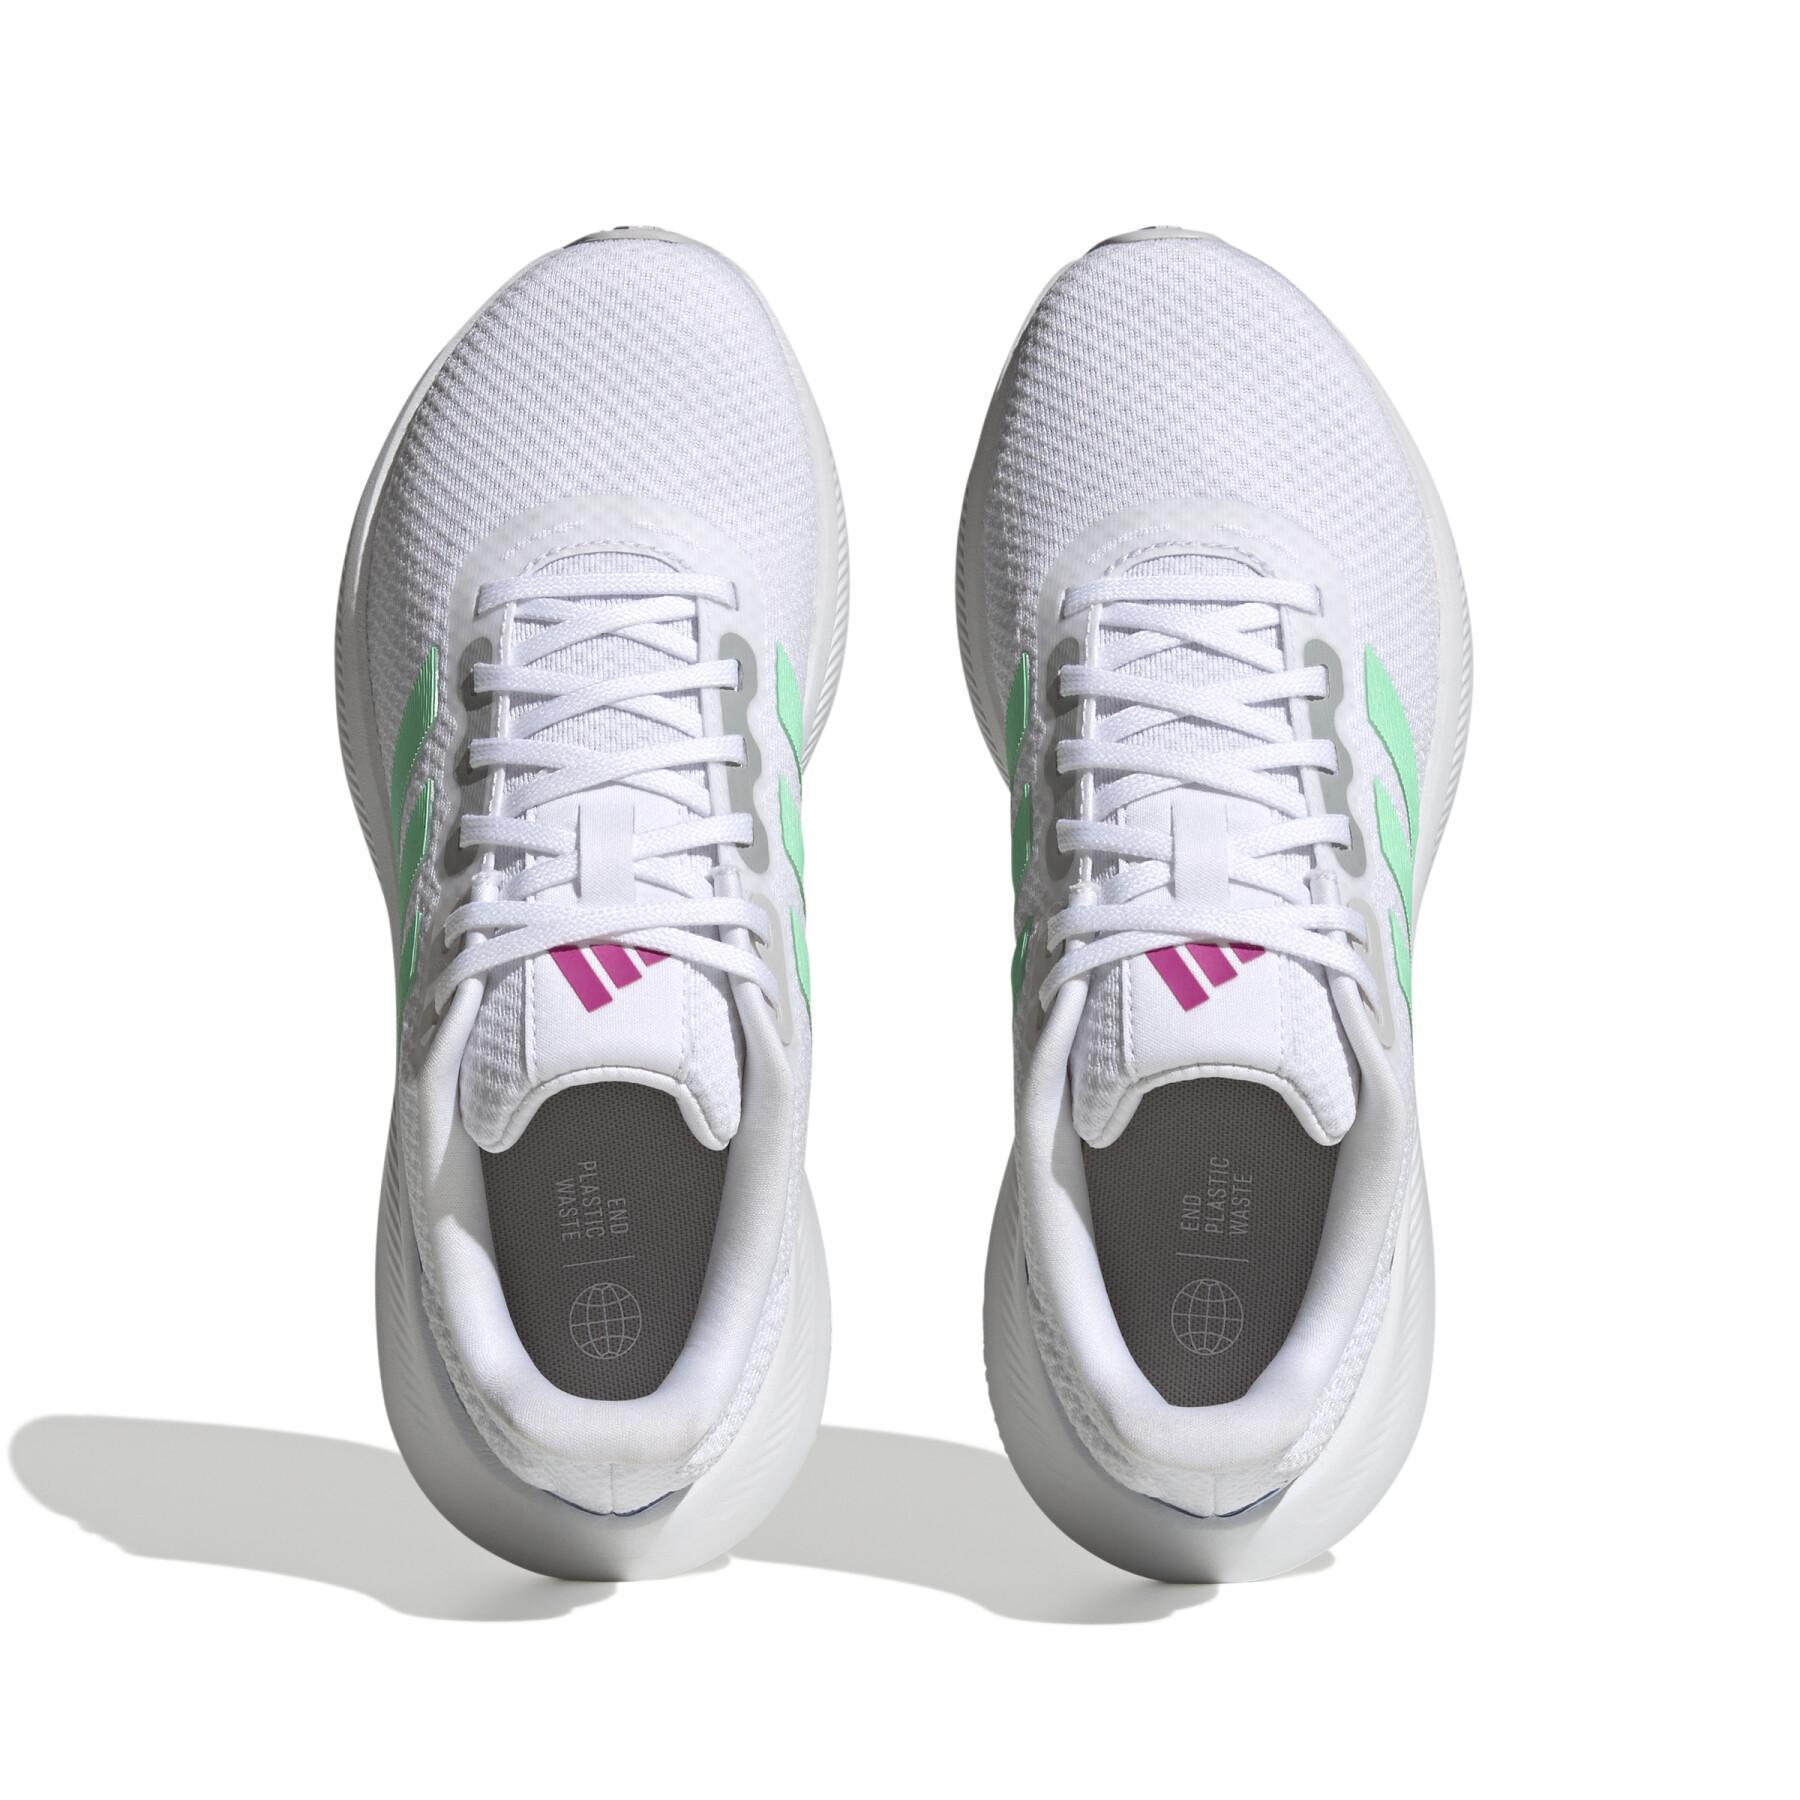 Chaussures de running femme adidas Runfalcon 3